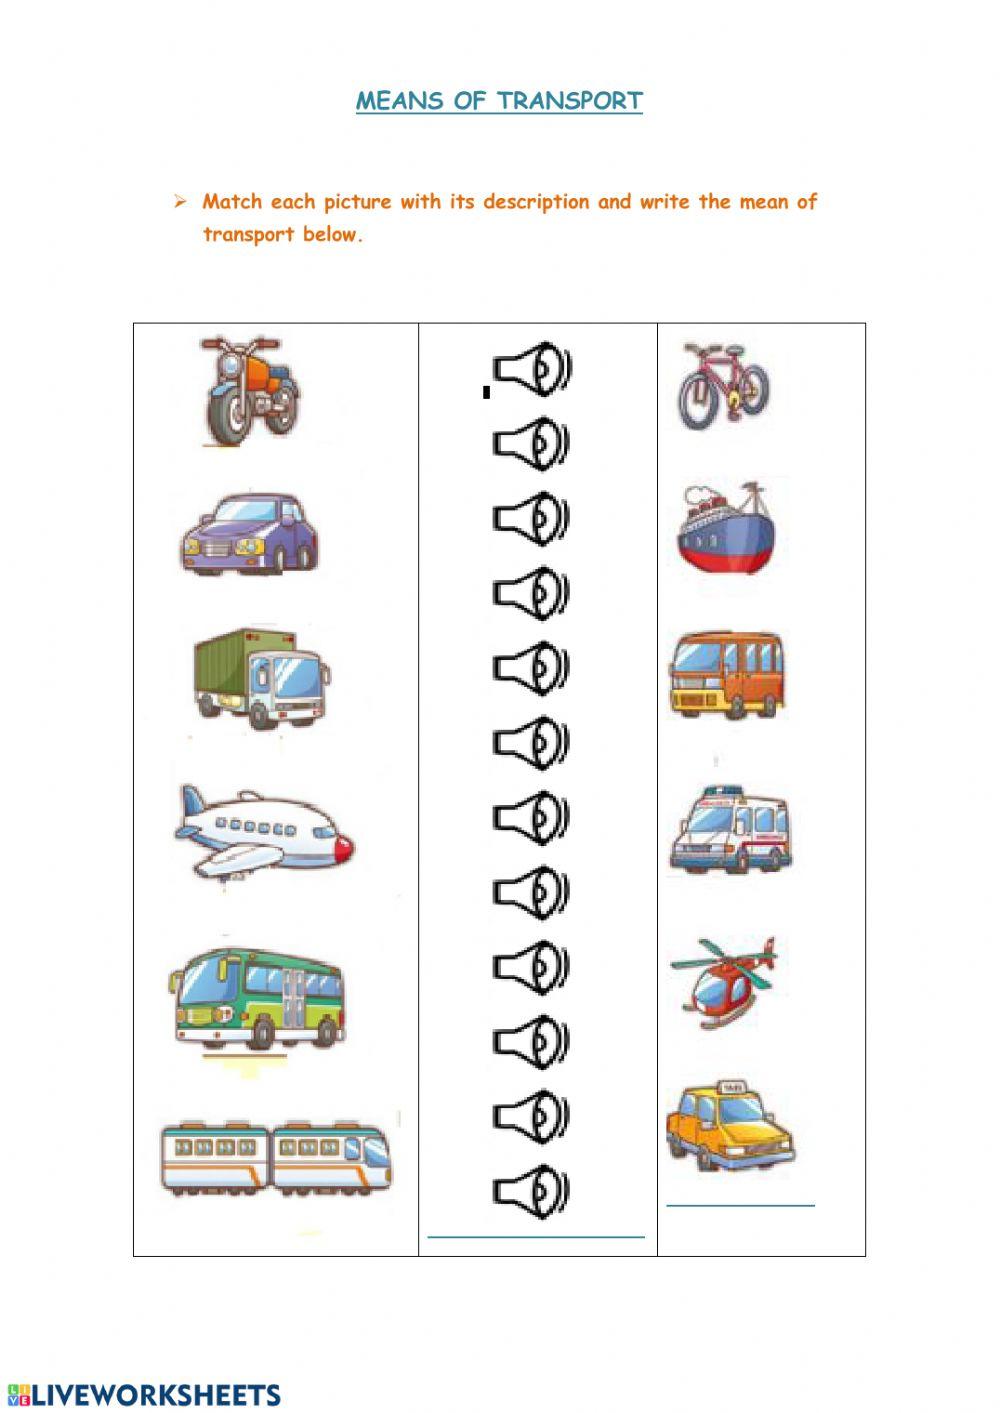 Liveworksheets-Means of transport